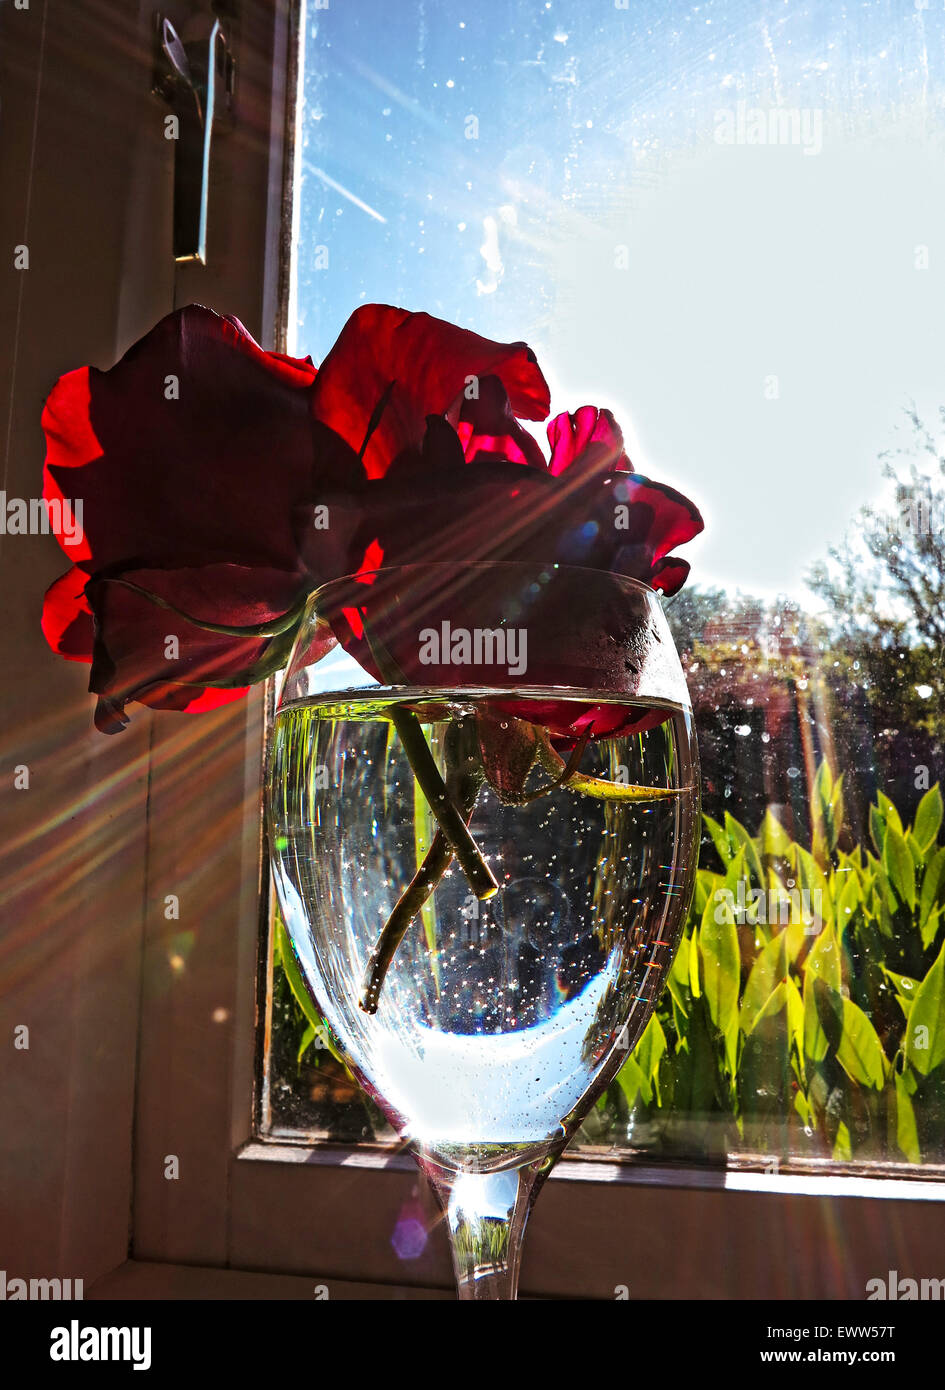 Le rose illuminata dal sole di mattina sulla mensola della cucina Foto Stock